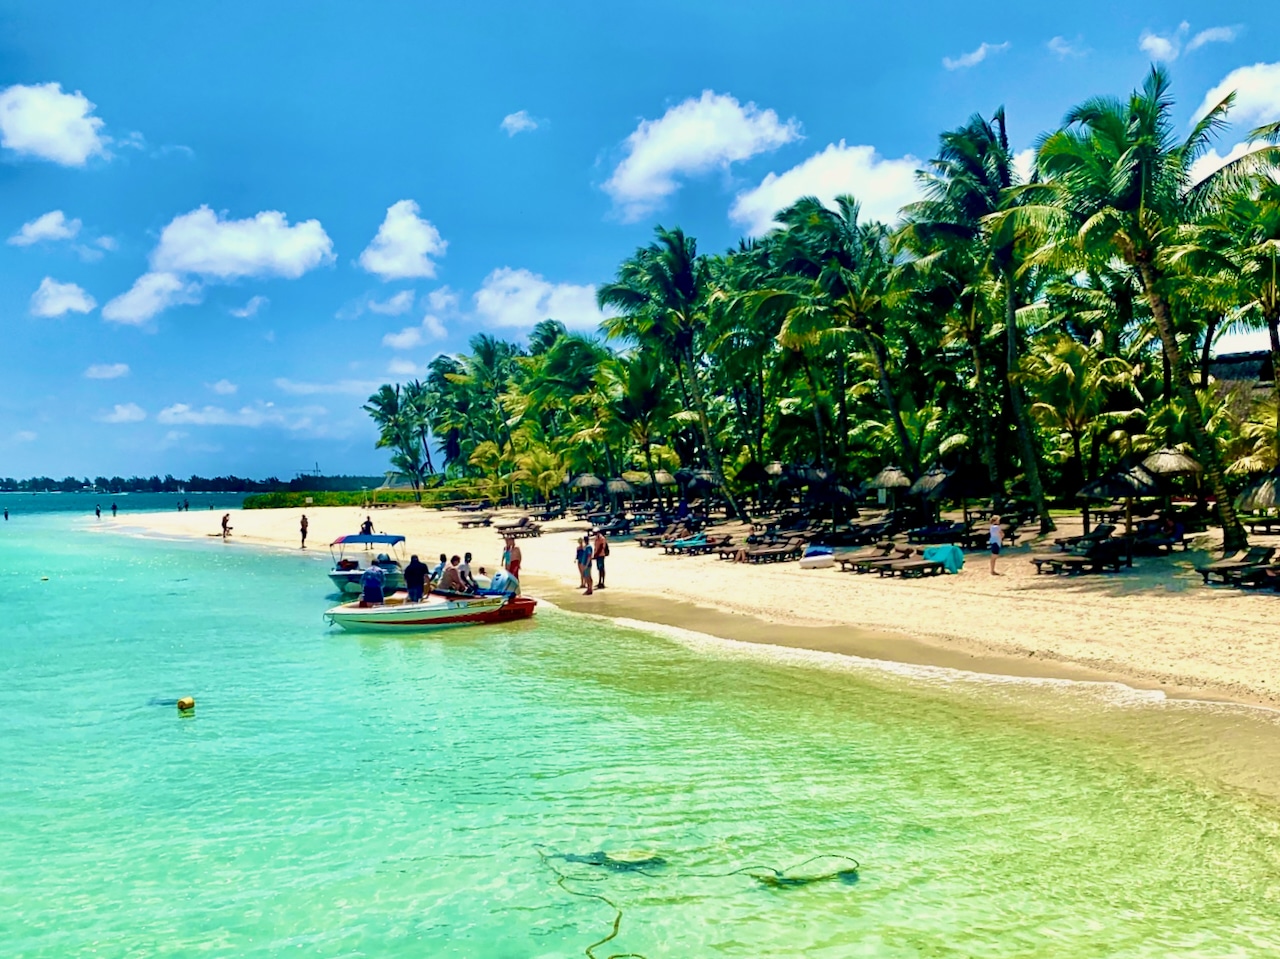 Raport z nurkowania na Mauritiusie Porady i porady Doświadczenia